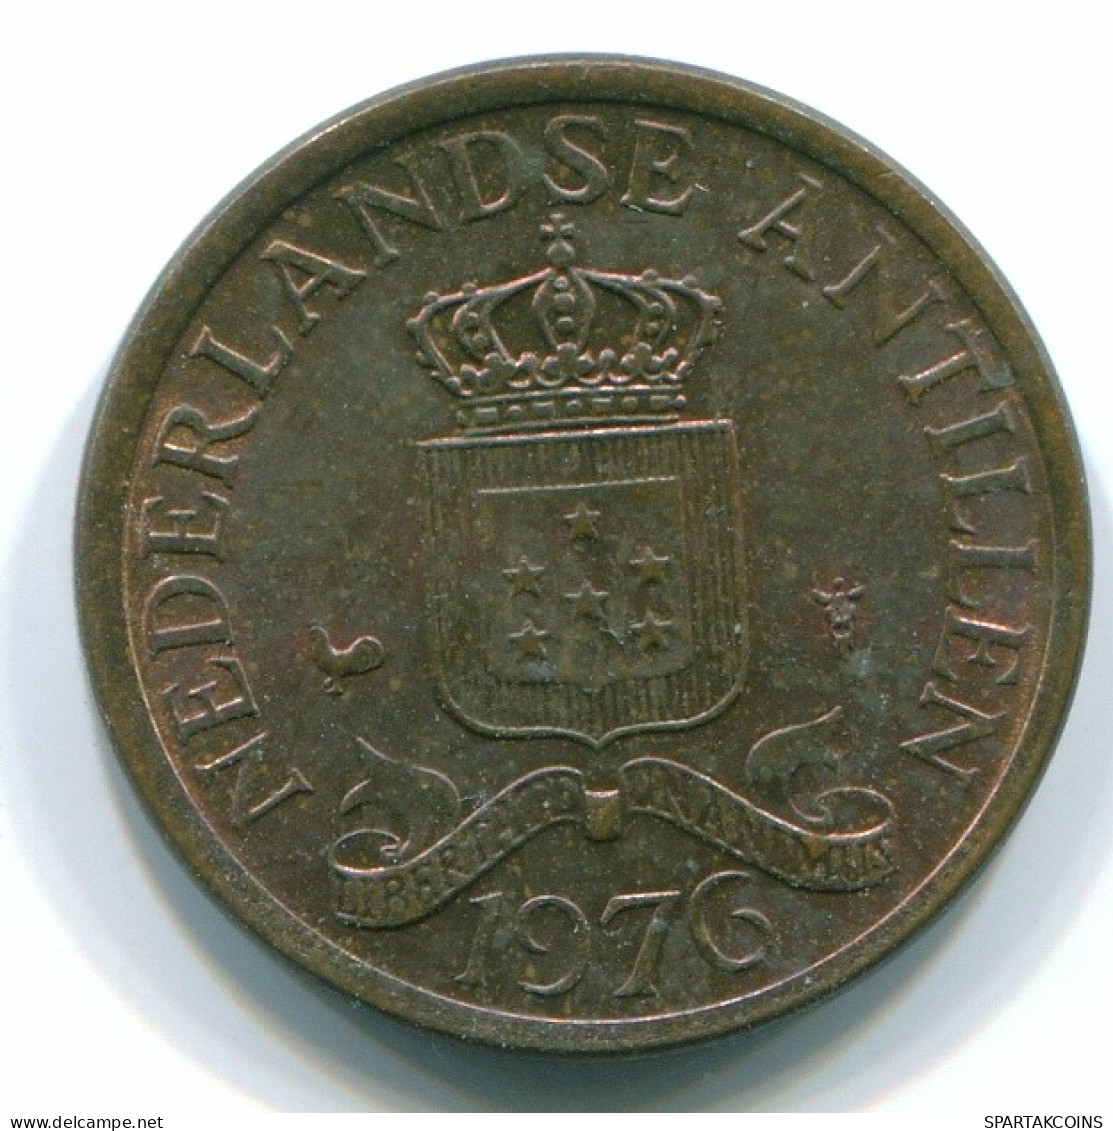 1 CENT 1976 NIEDERLÄNDISCHE ANTILLEN Bronze Koloniale Münze #S10690.D.A - Niederländische Antillen